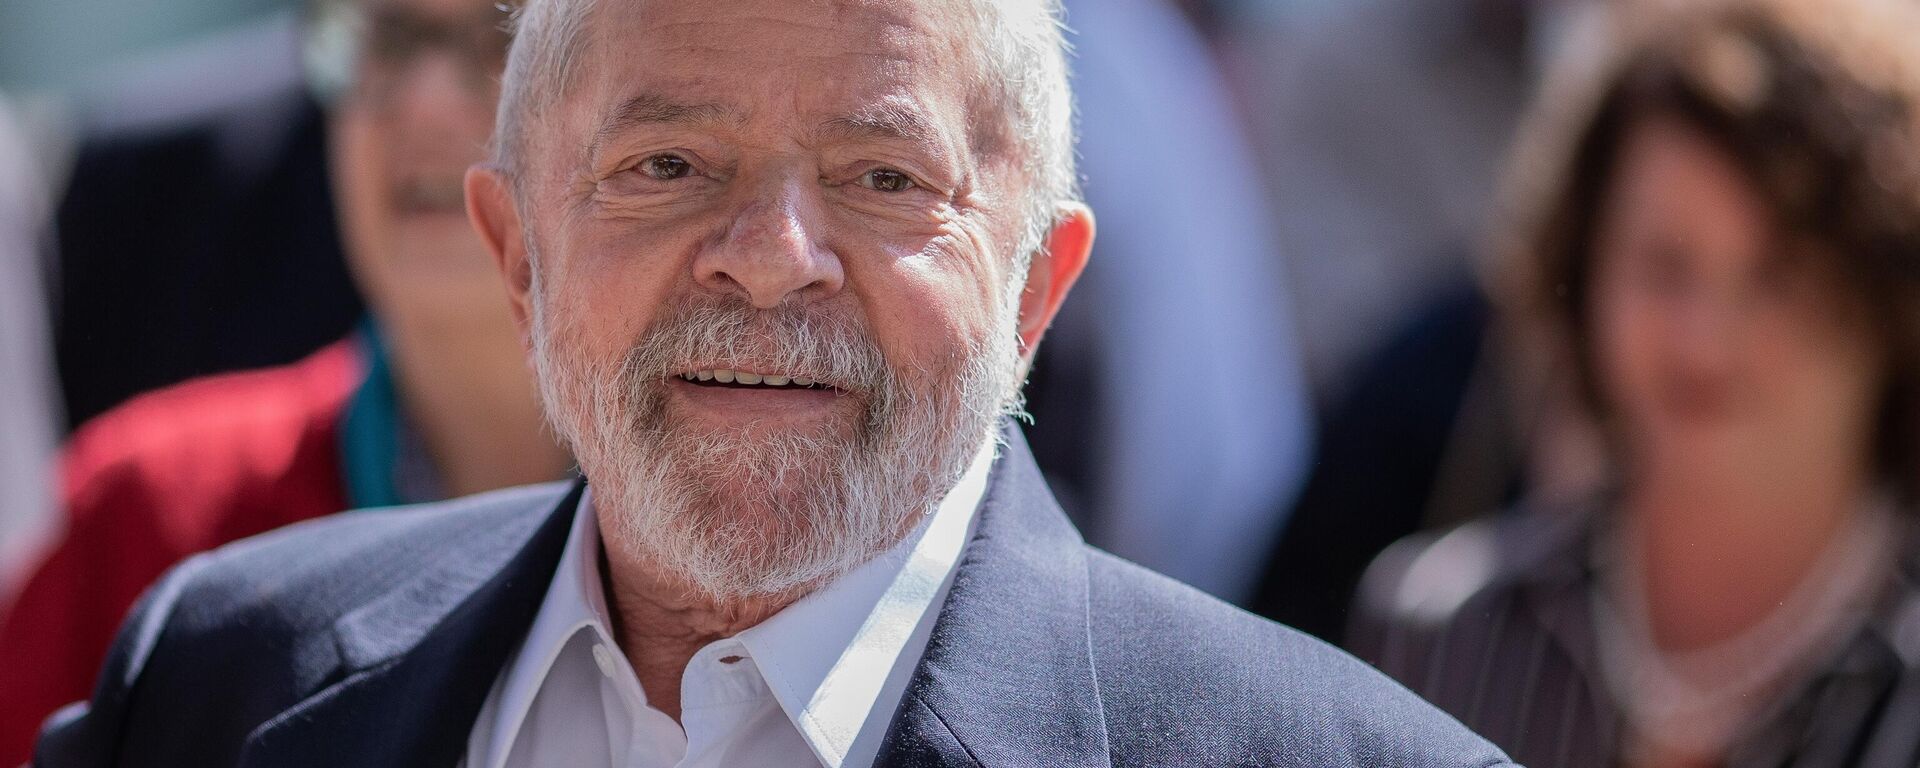 O ex-presidente Lula (PT) em Juiz de Fora, 11 de maio de 2022 - Sputnik Brasil, 1920, 25.05.2022